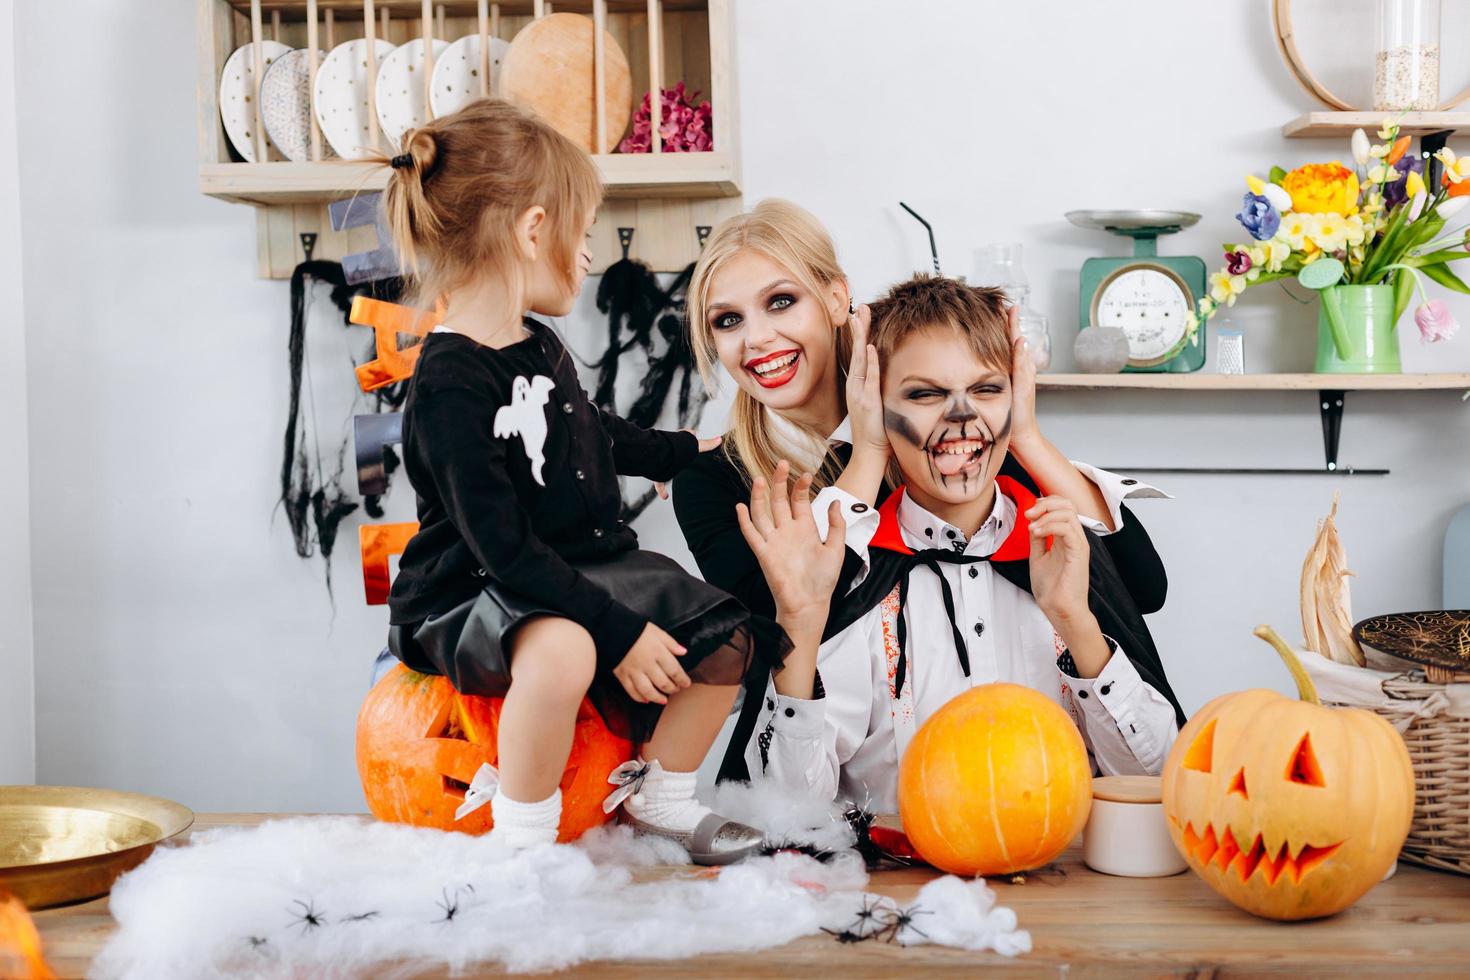 preparações de família felizes para o dia das bruxas. menino mostrando língua e mulher sorrindo foto